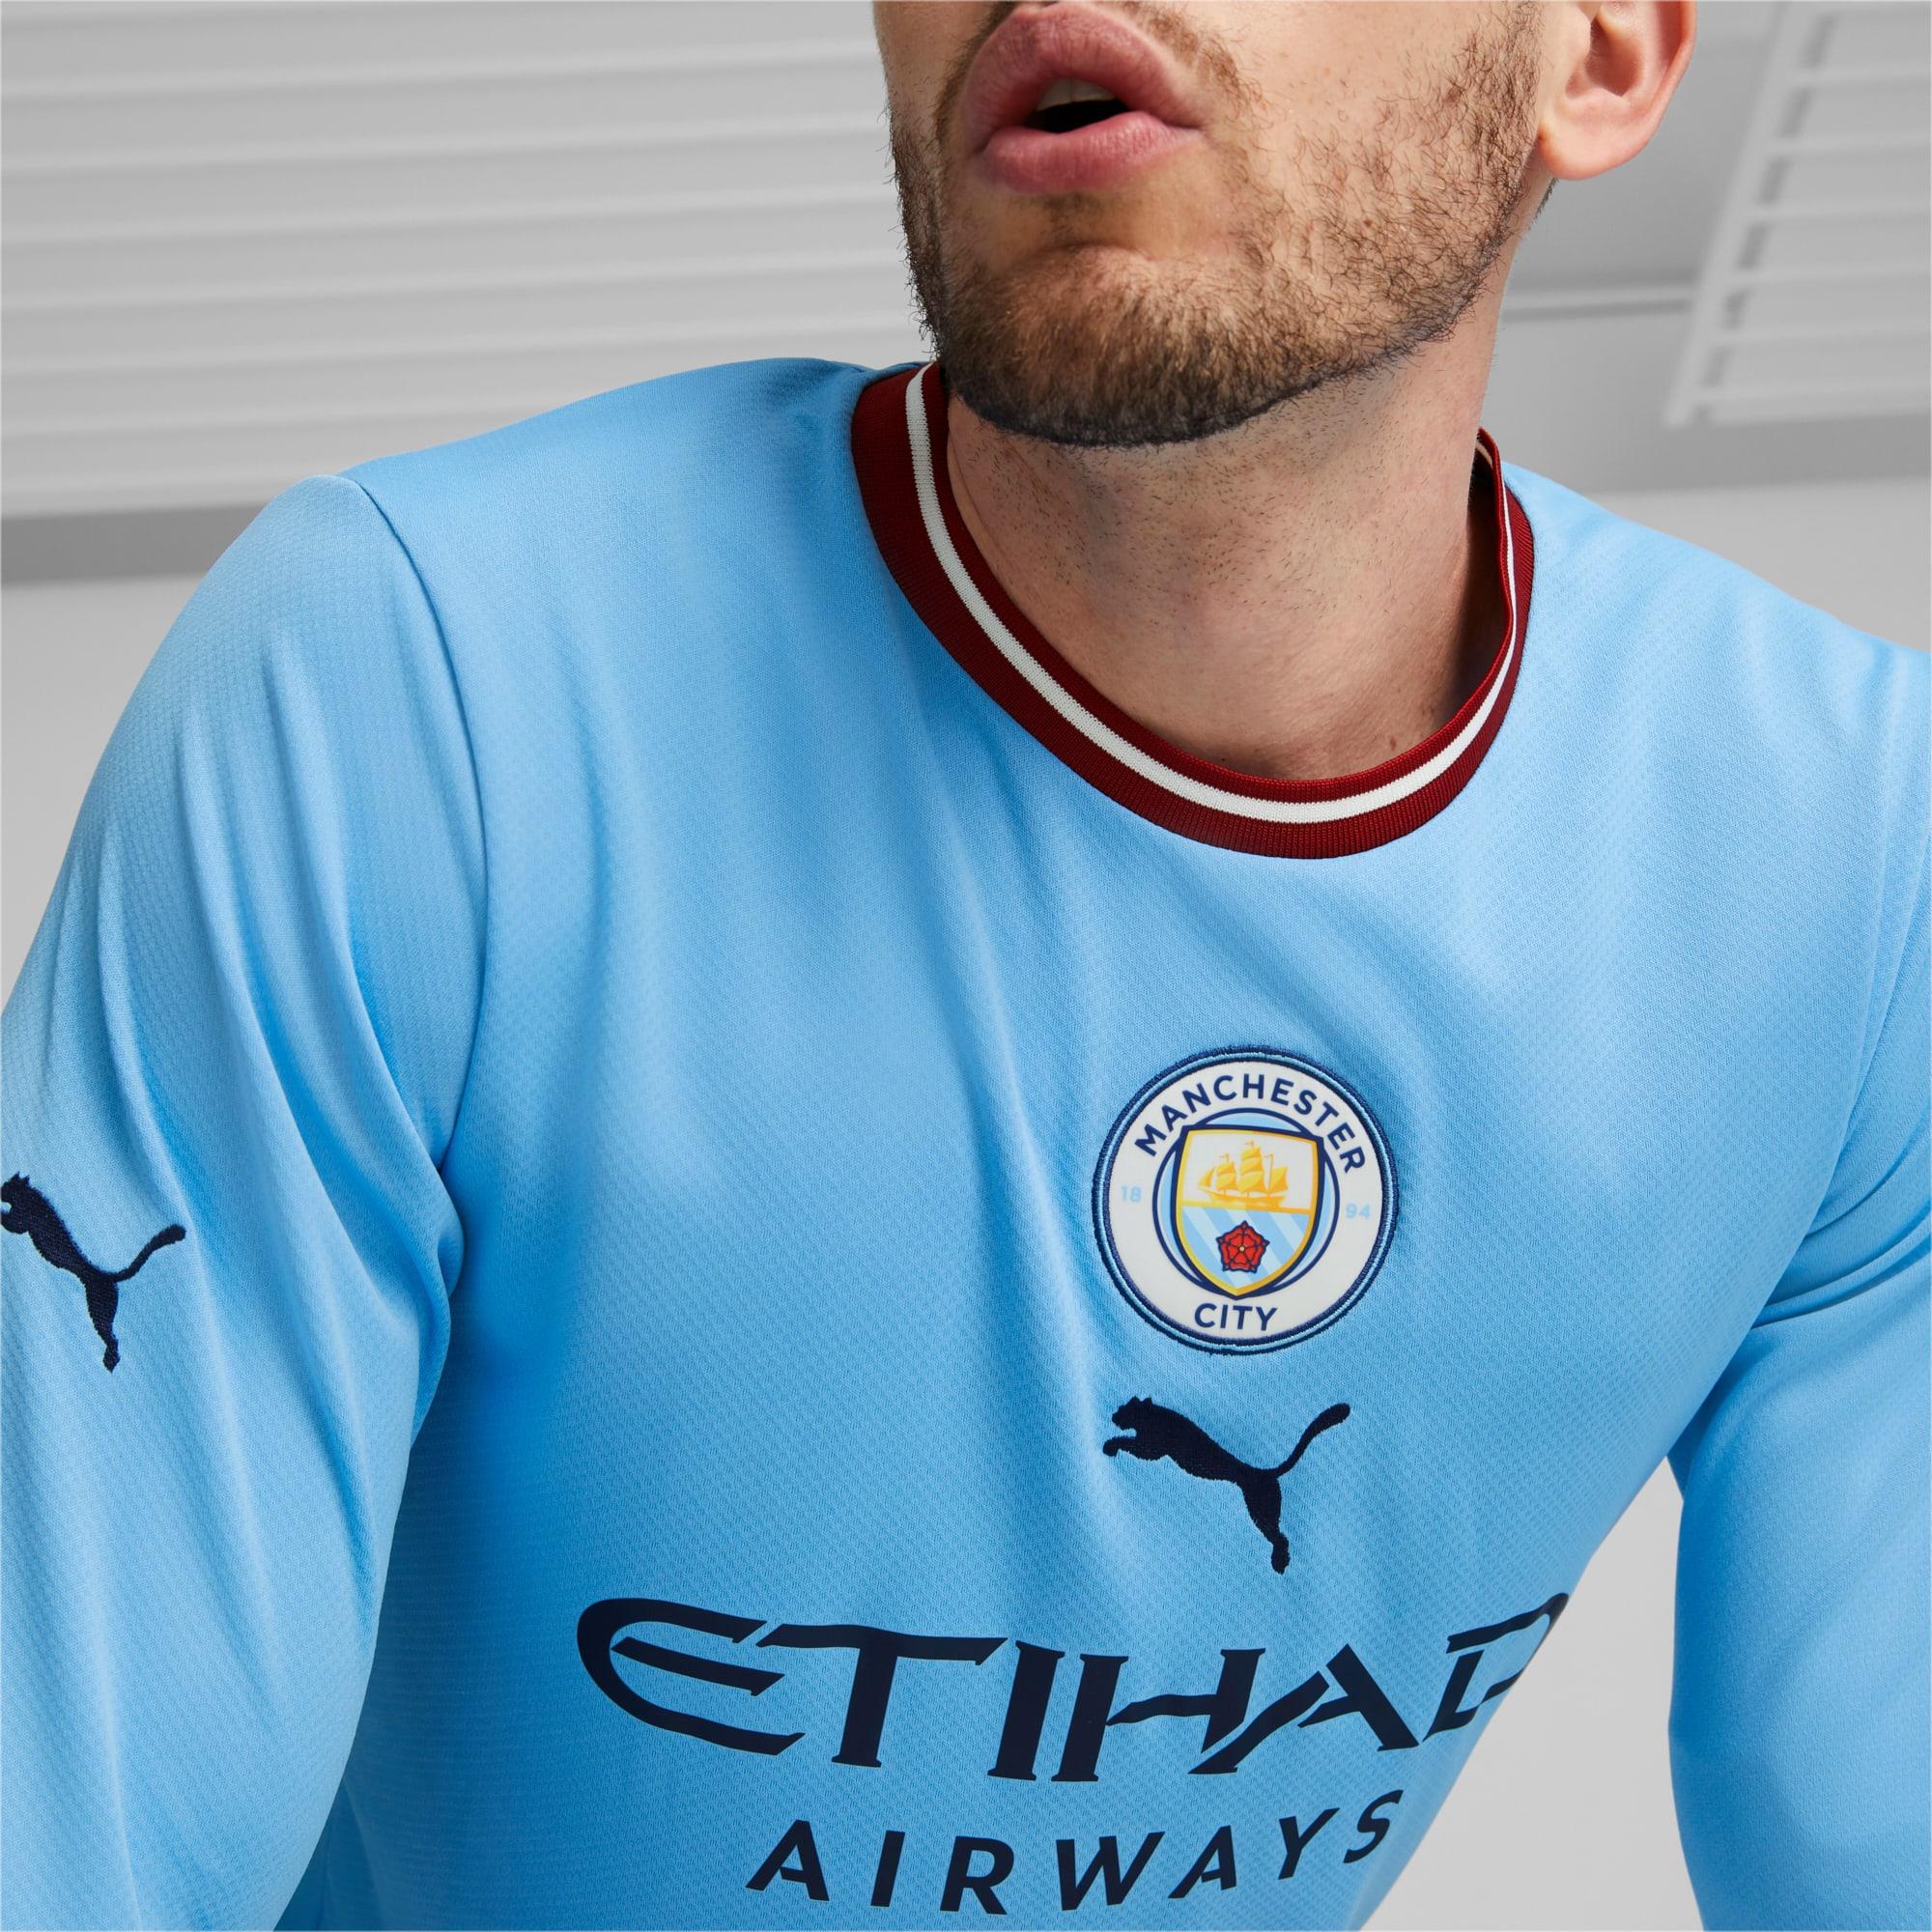 Calze a strisce Manchester City F.C Puma Uomo Abbigliamento Intimo Calze Replica da uomo 